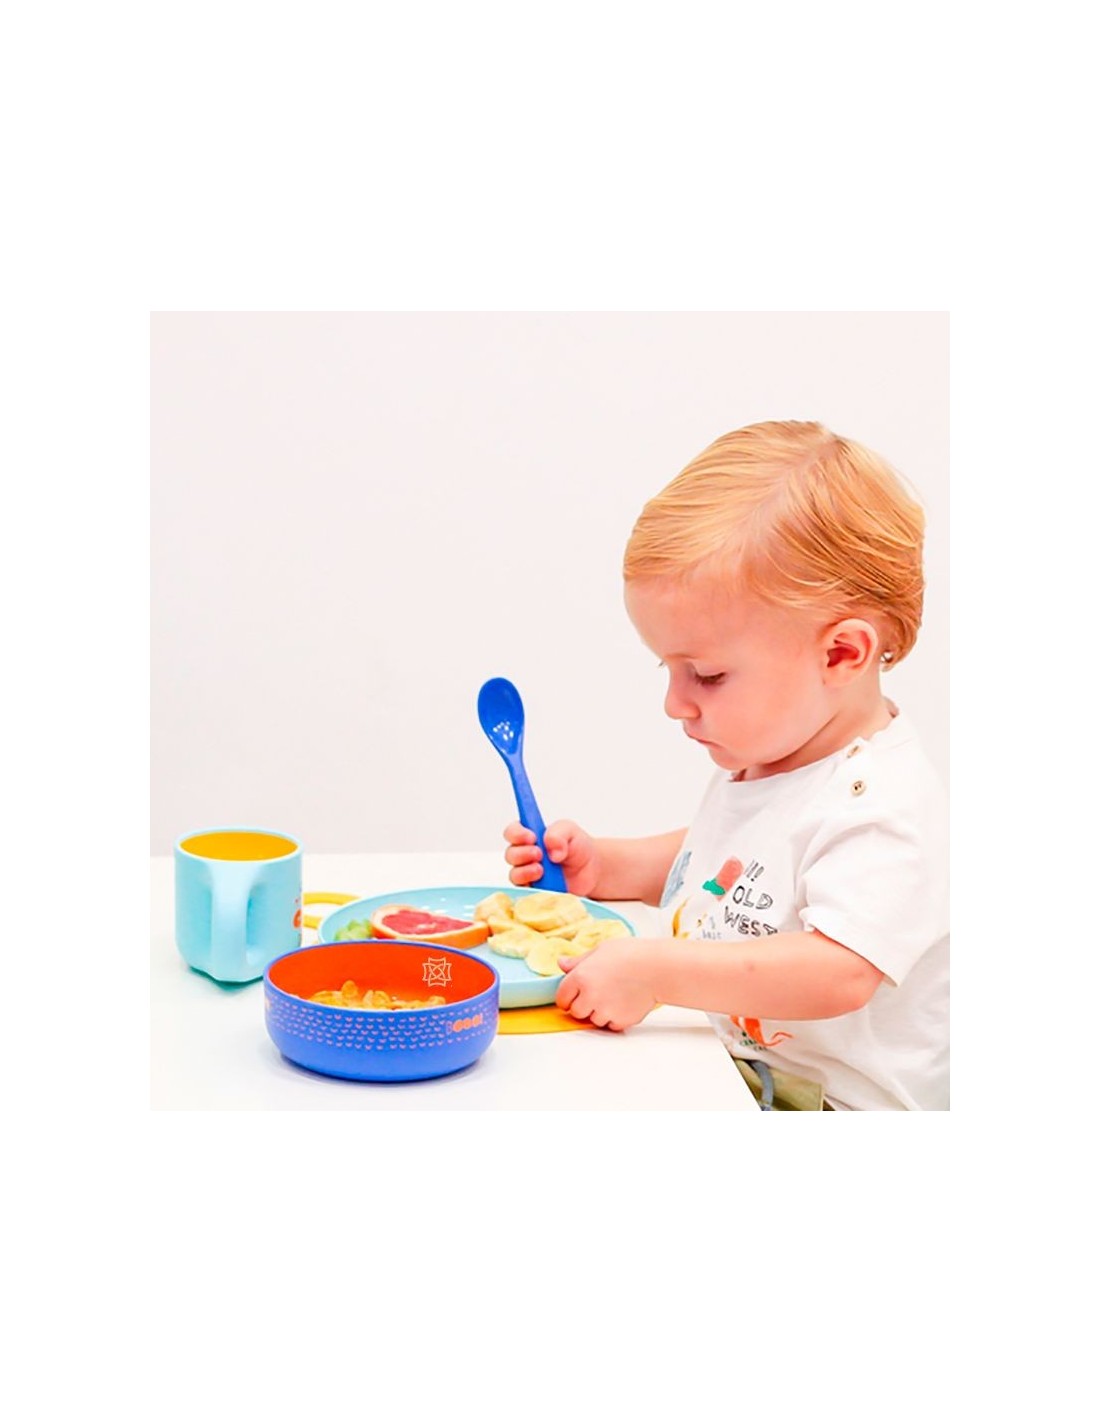 Vajilla infantil azul de aprendizaje Suavinex para la alimentación.